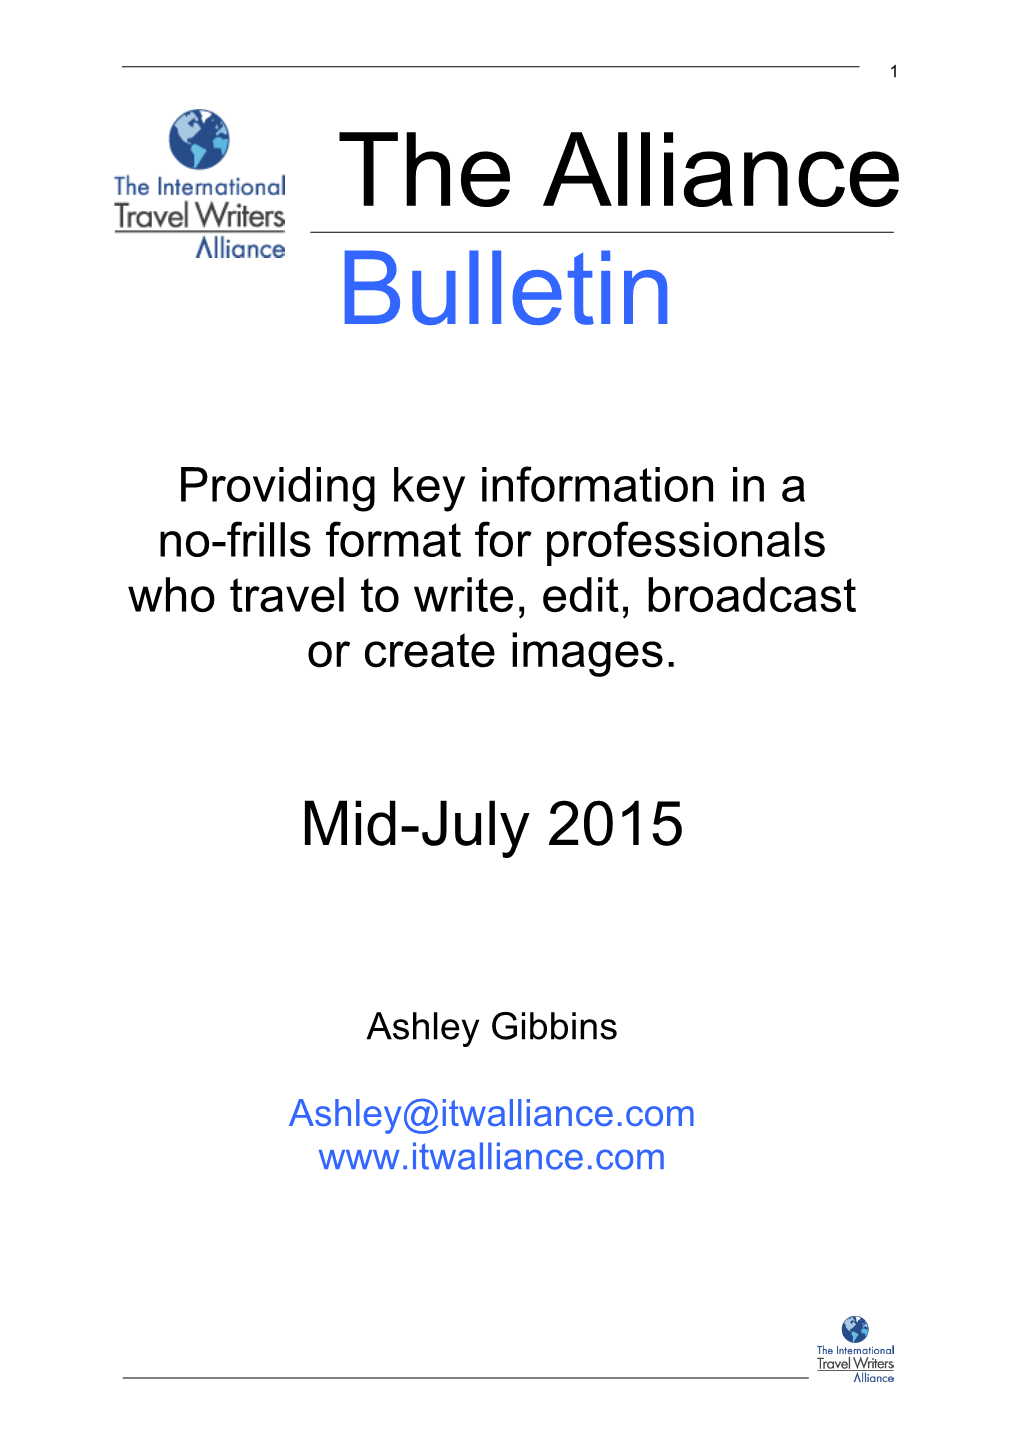 Alliance Bulletin Mid-July 2015